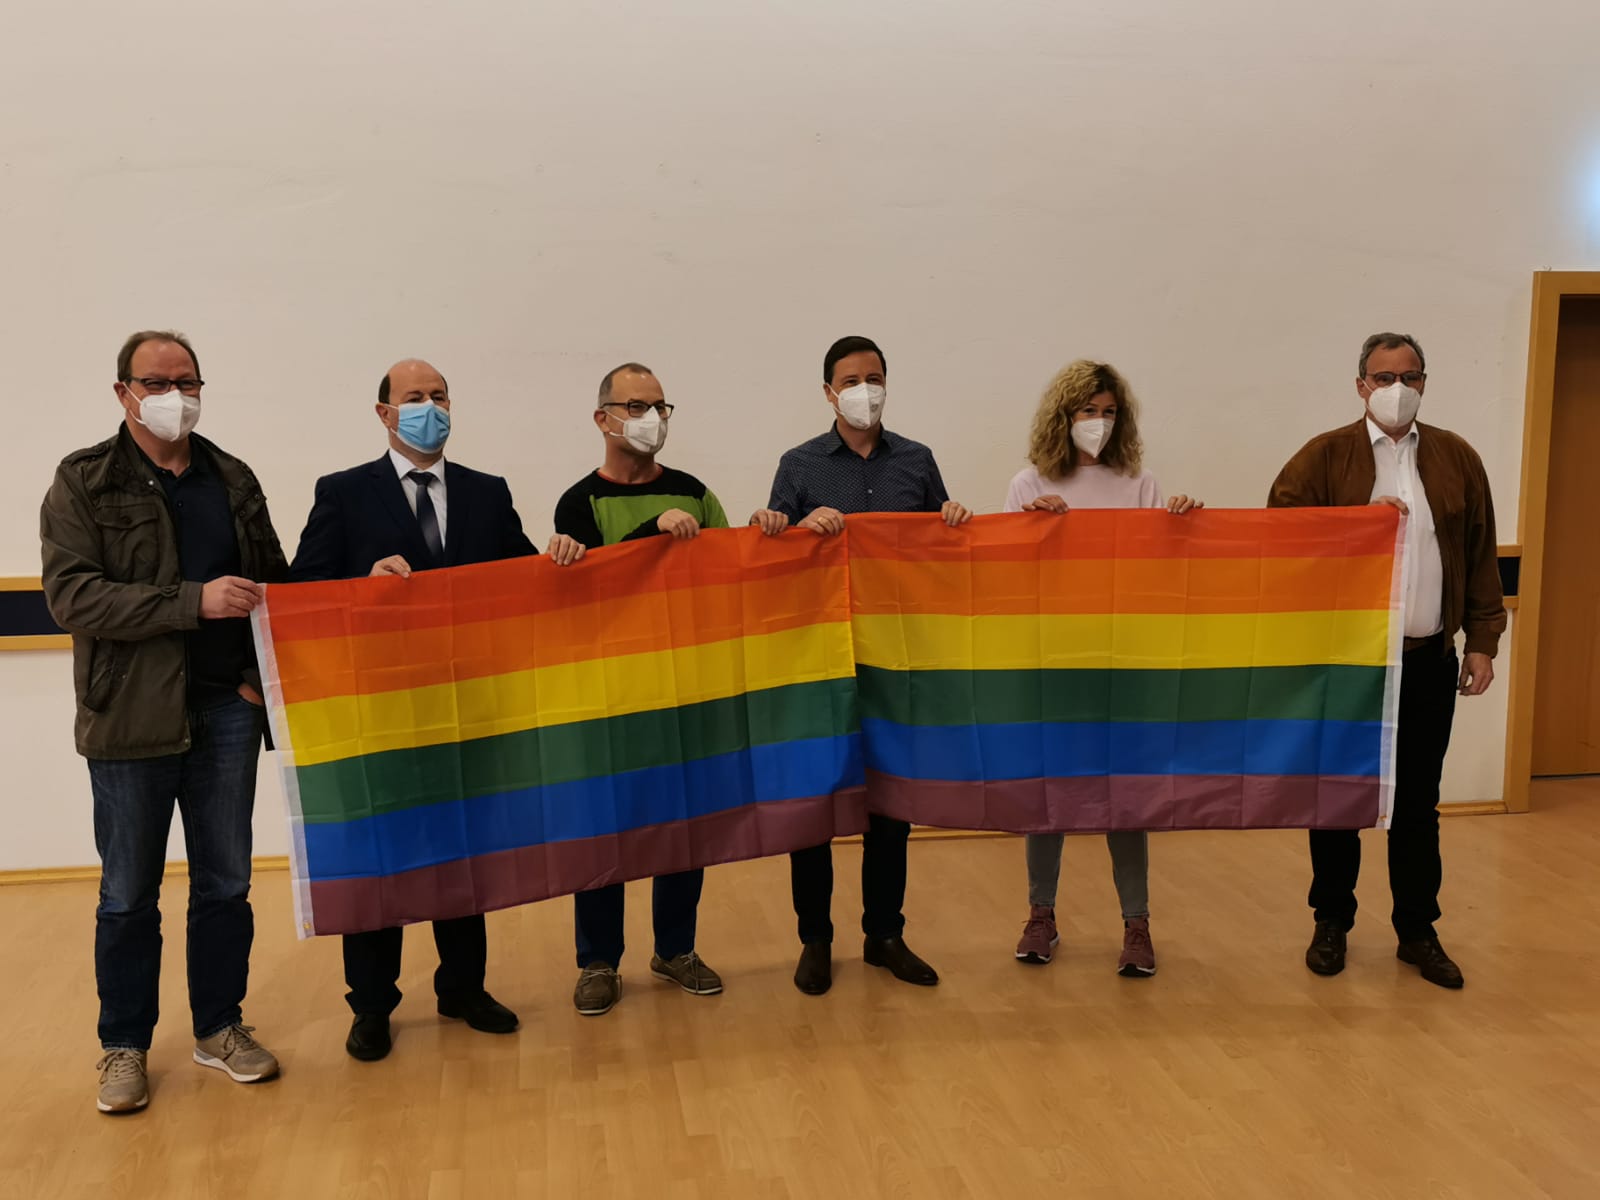 Bürgermeister und Fraktionsvorsitzende stellen sich zusammen hinter die Regenbogenflagge